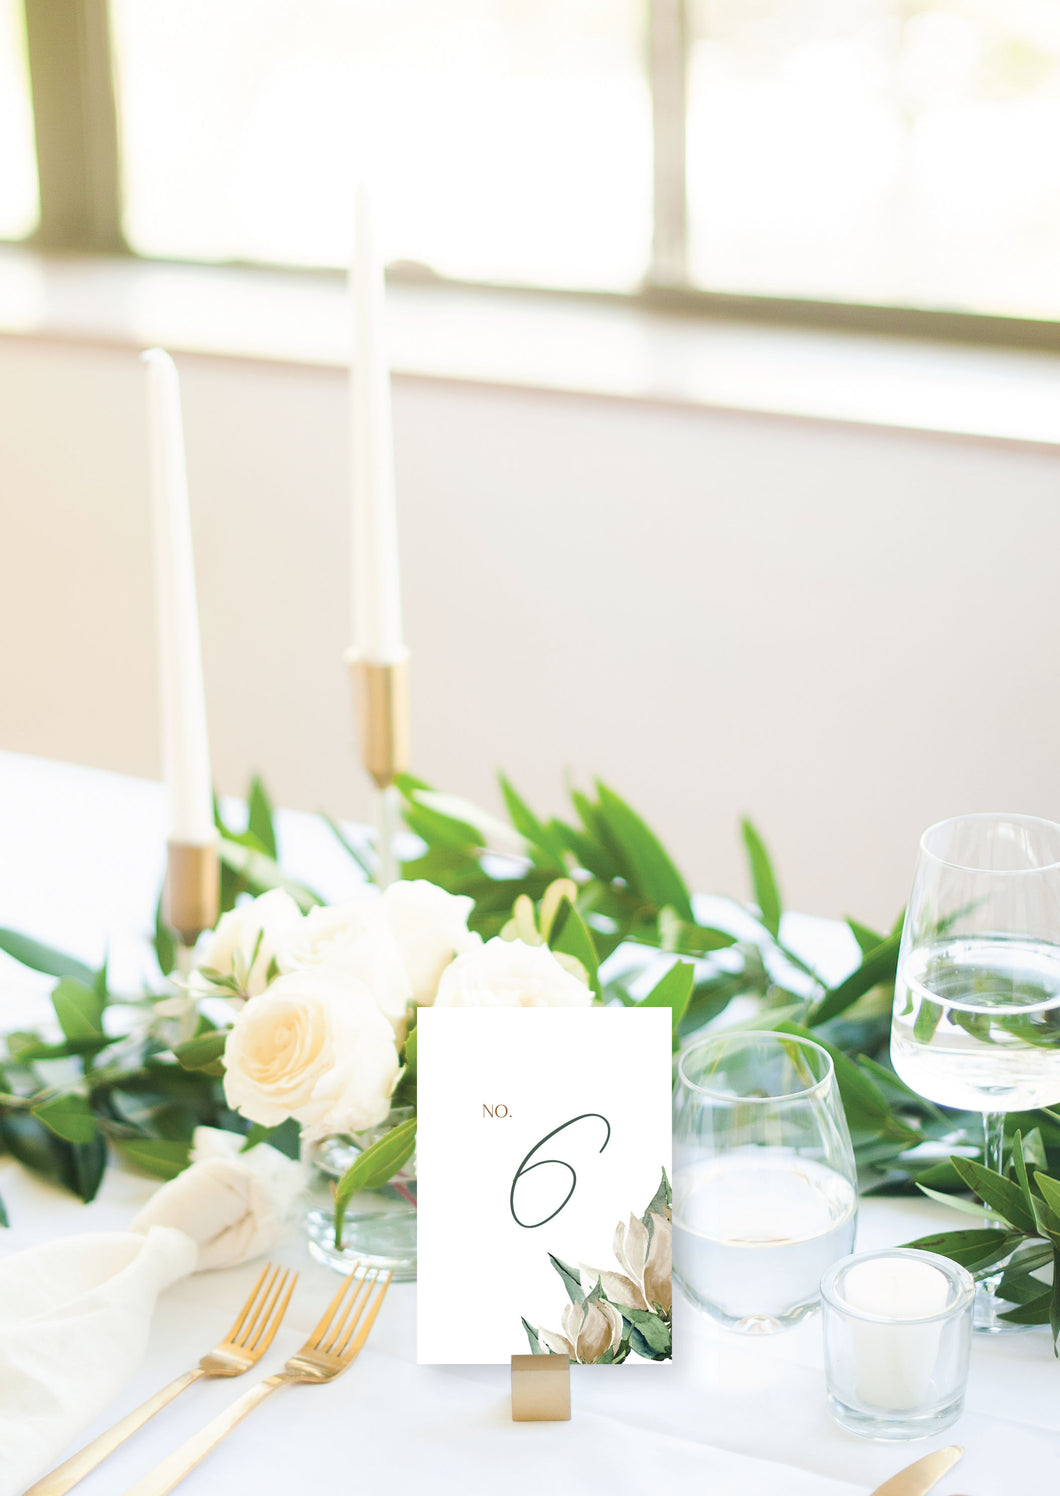 Elegant Minimalist Wedding Table Numbers